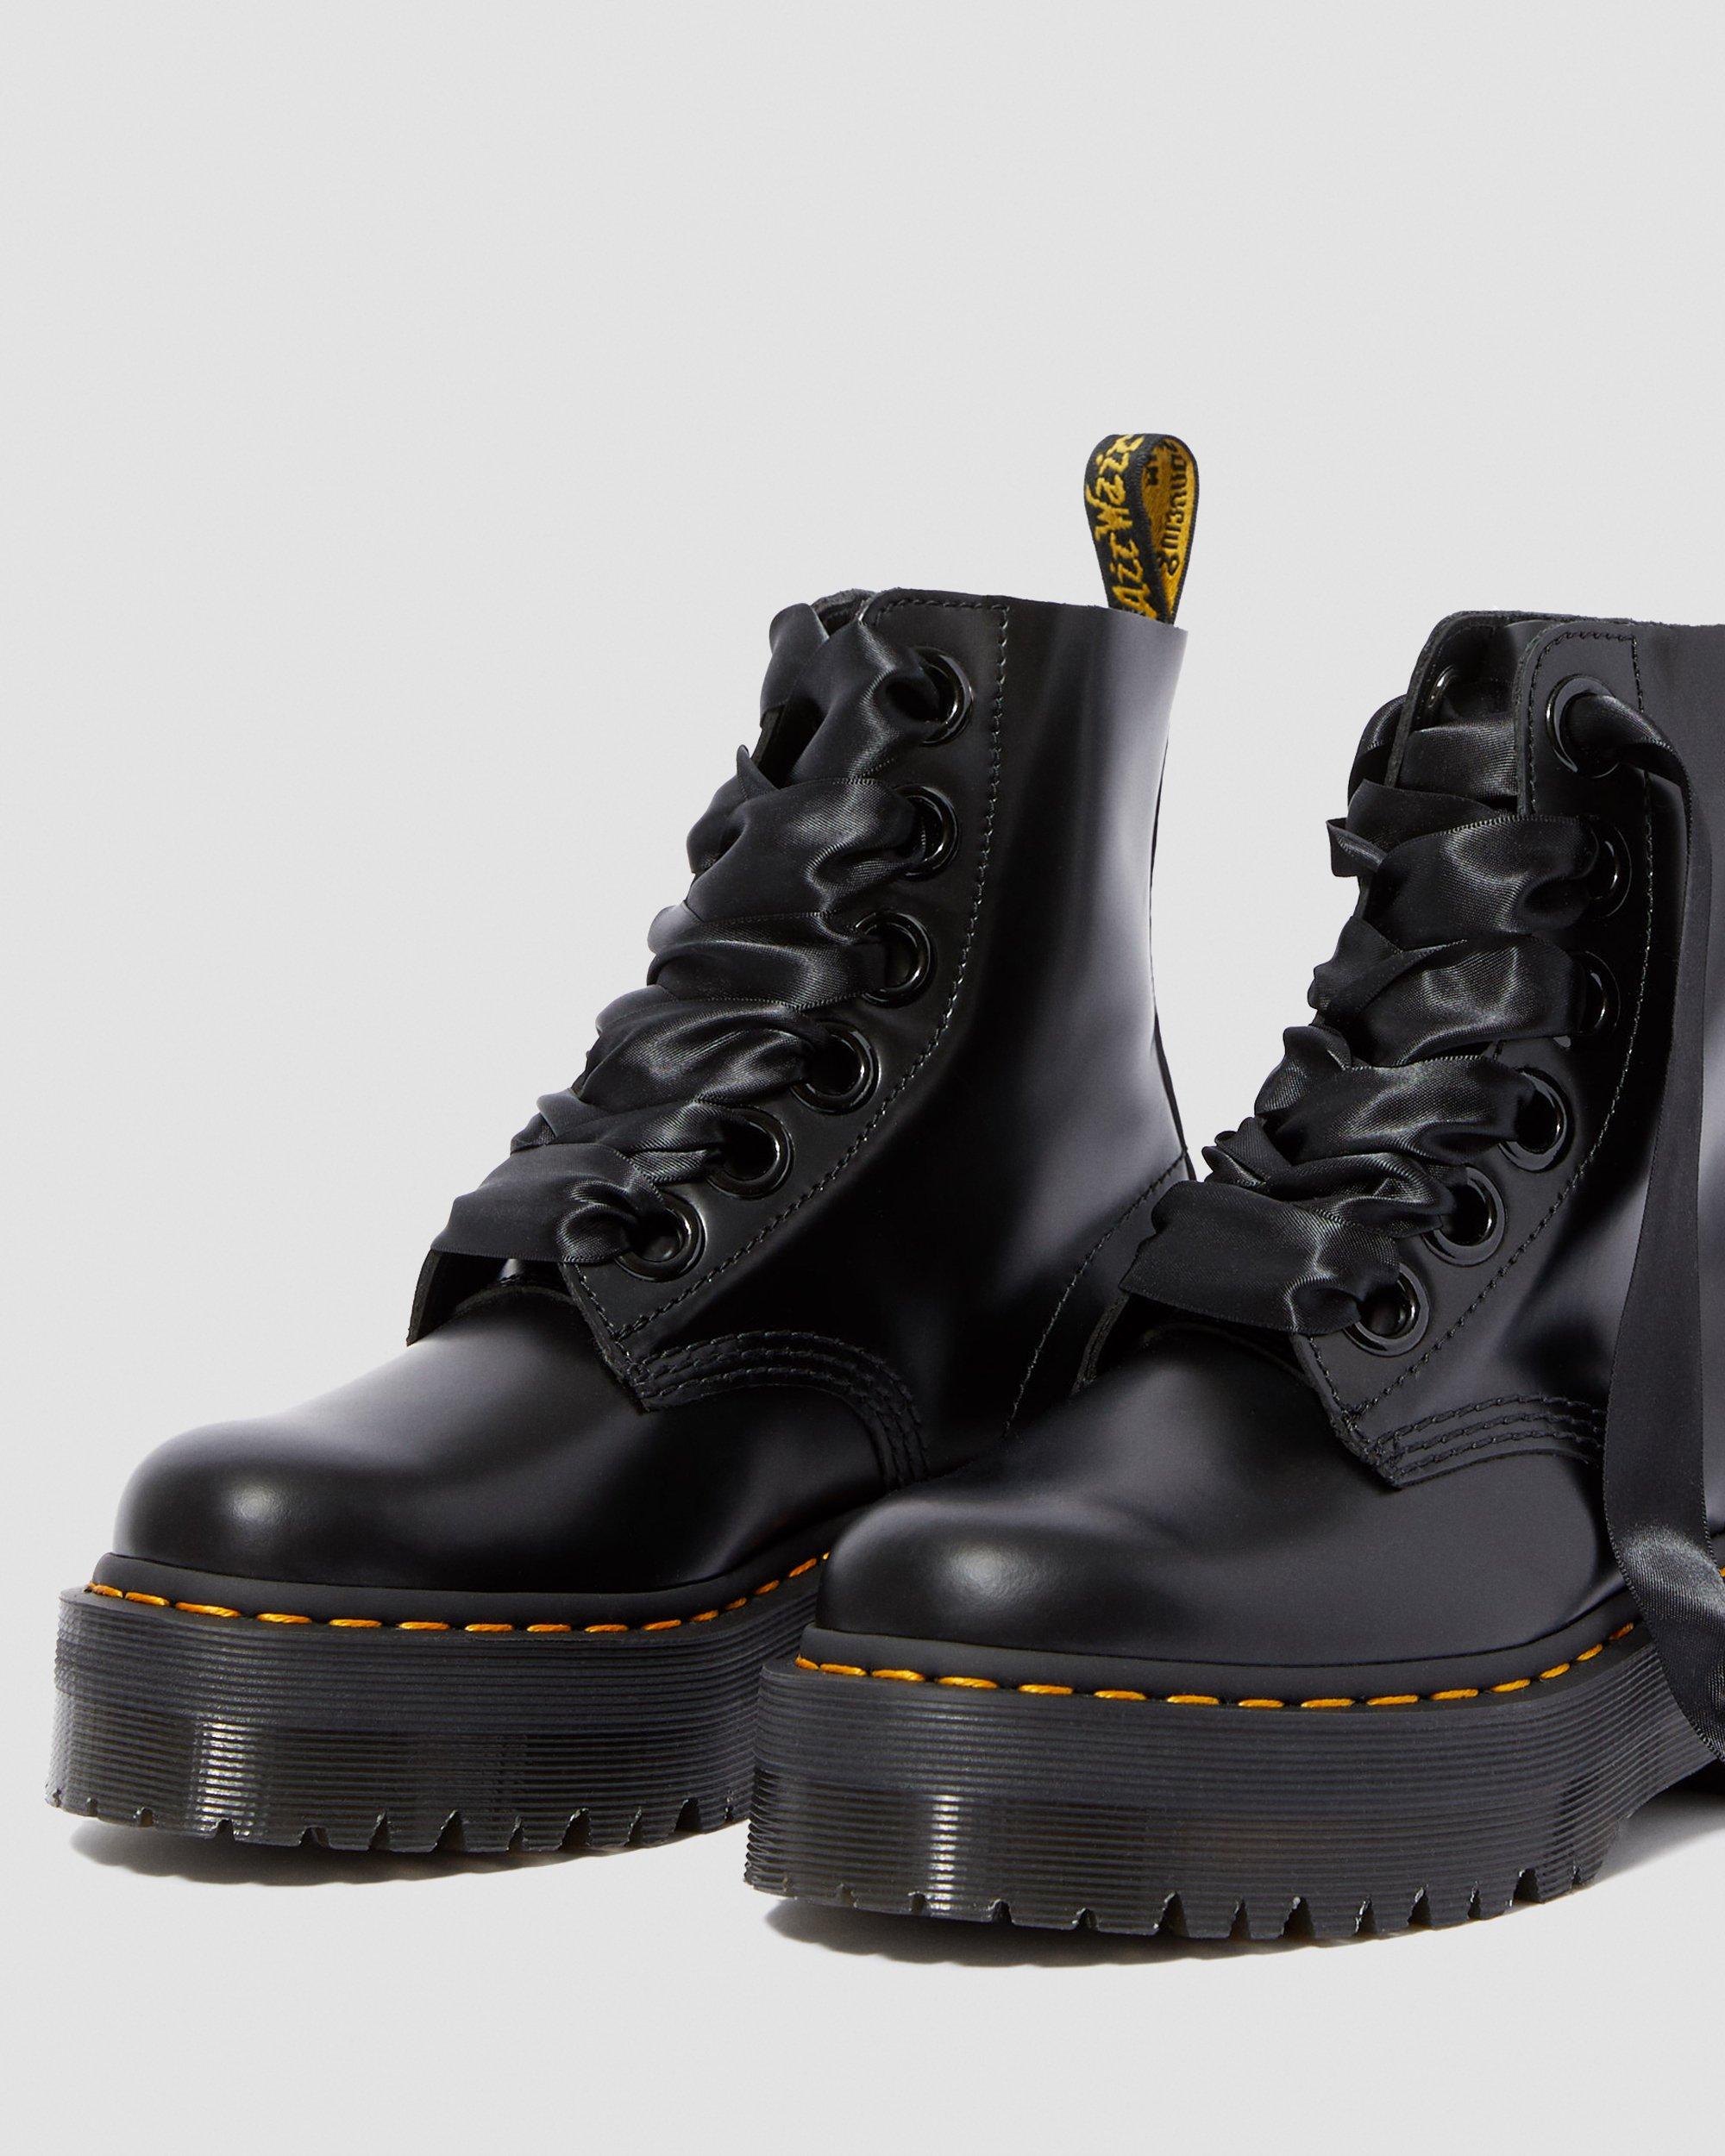 Brouwerij vertrekken ik klaag Molly Women's Leather Platform Boots | Dr. Martens